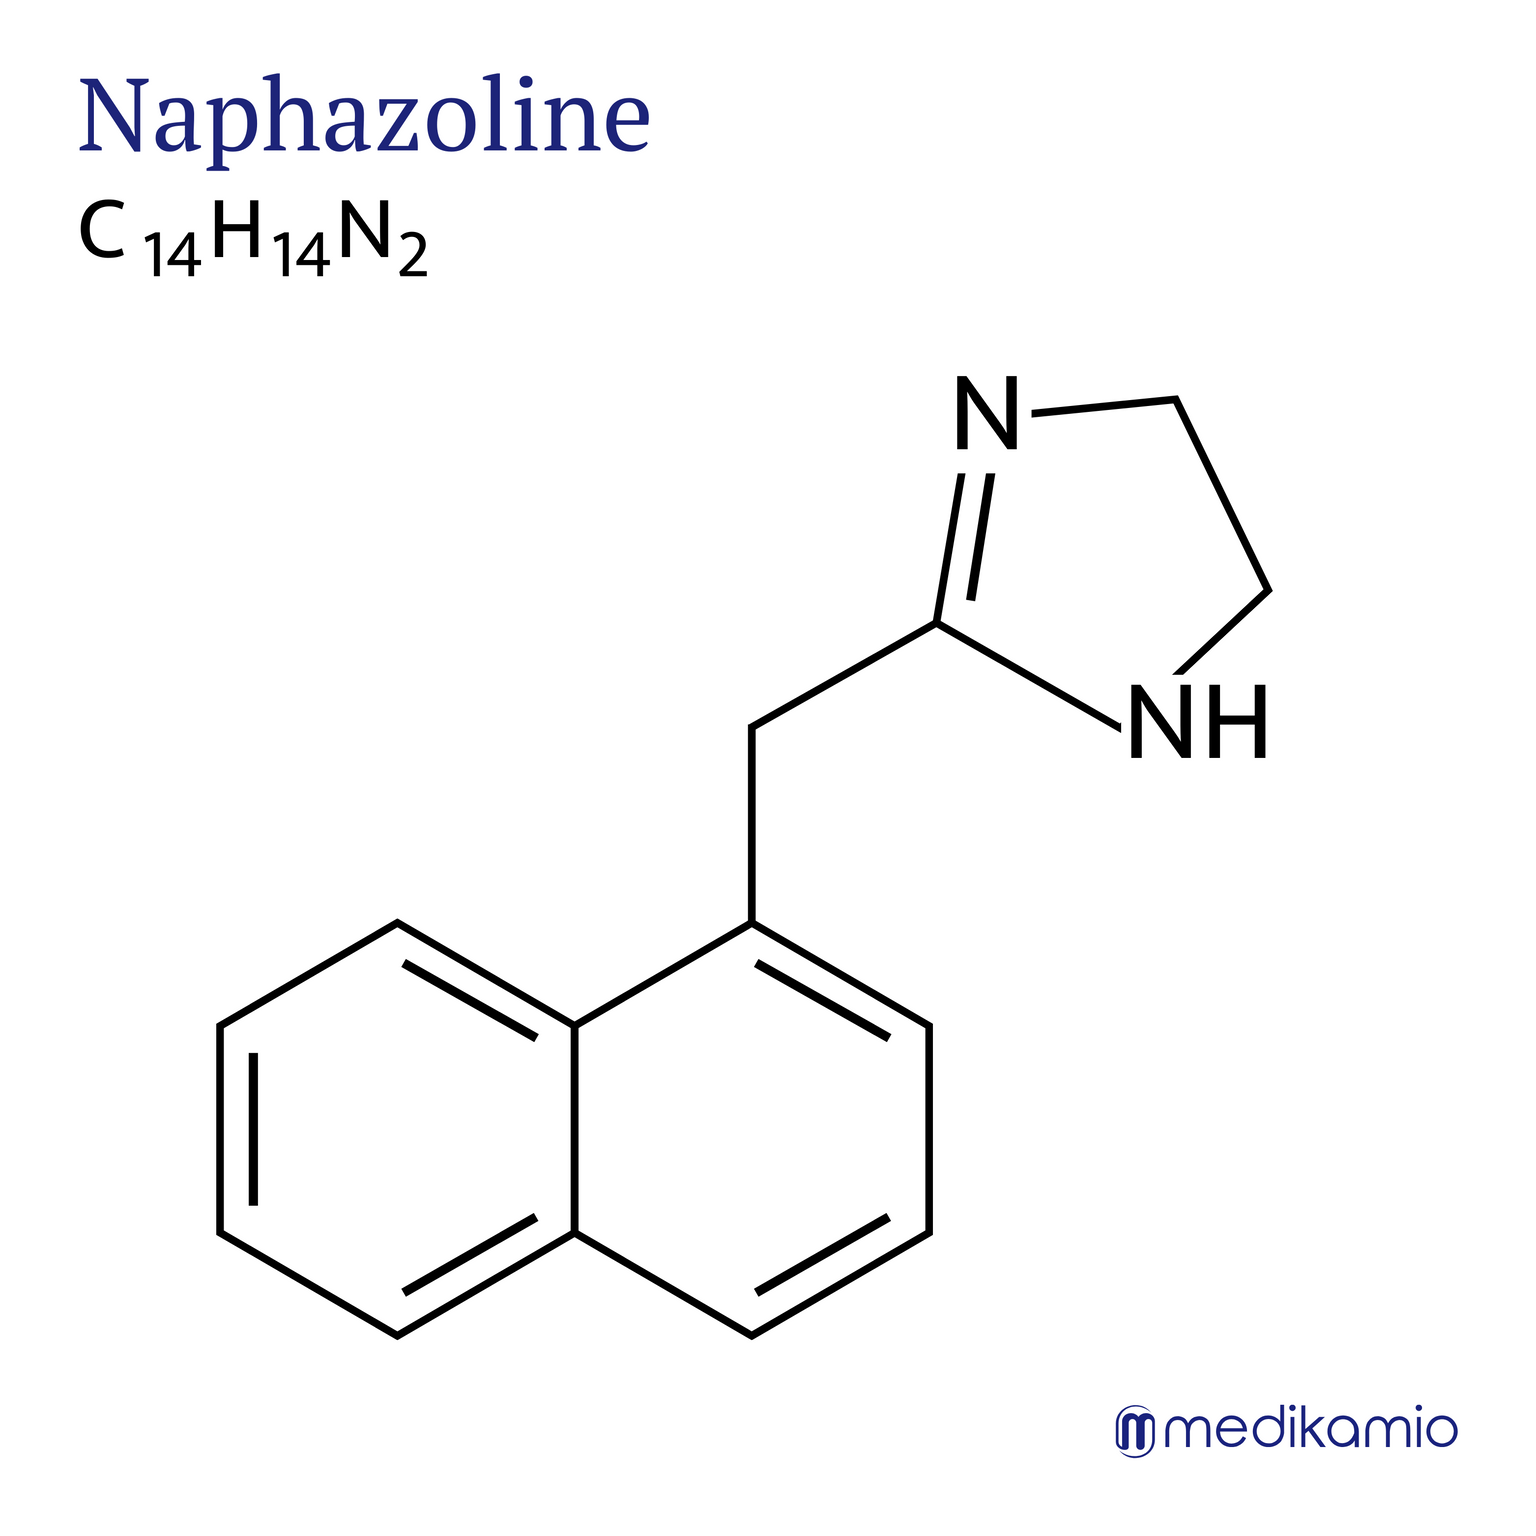 Fórmula estructural gráfica del principio activo nafazolina